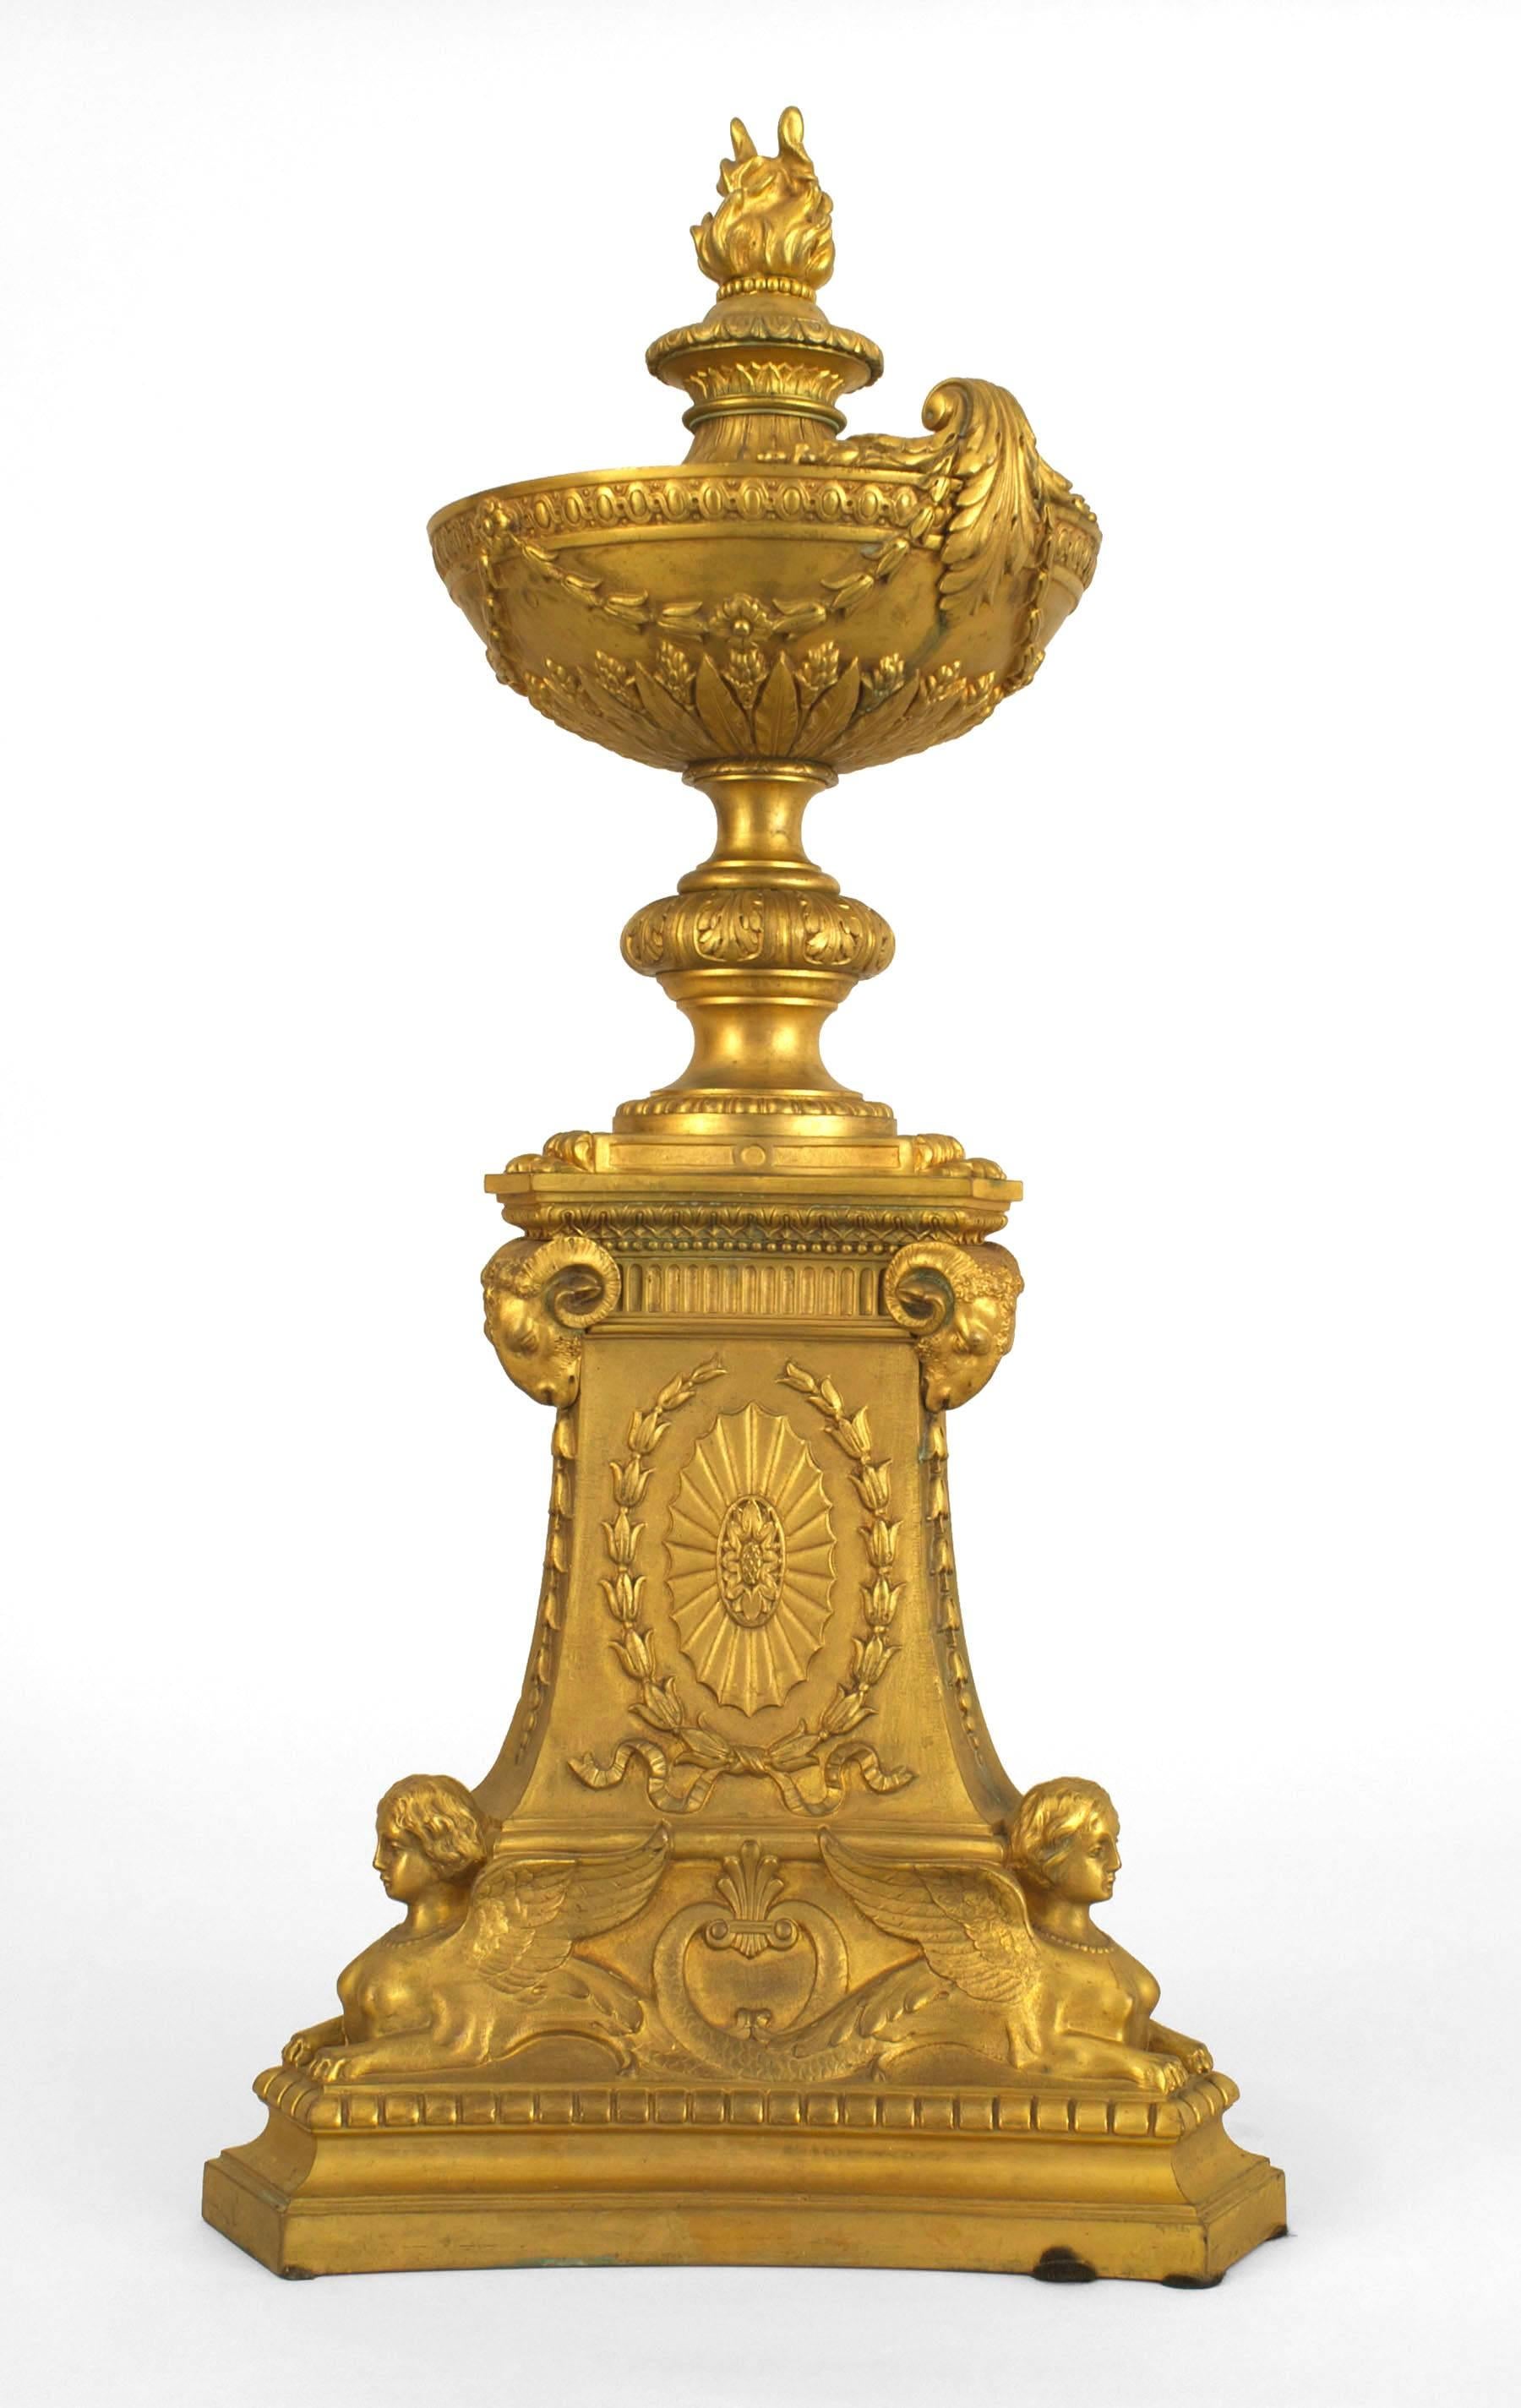 Paire d'urnes en bronze doré de style Empire français (19e siècle), avec des bases triangulaires, des sommets à fleur et des têtes de bélier sphinx. (PRIX PAR Paire)
